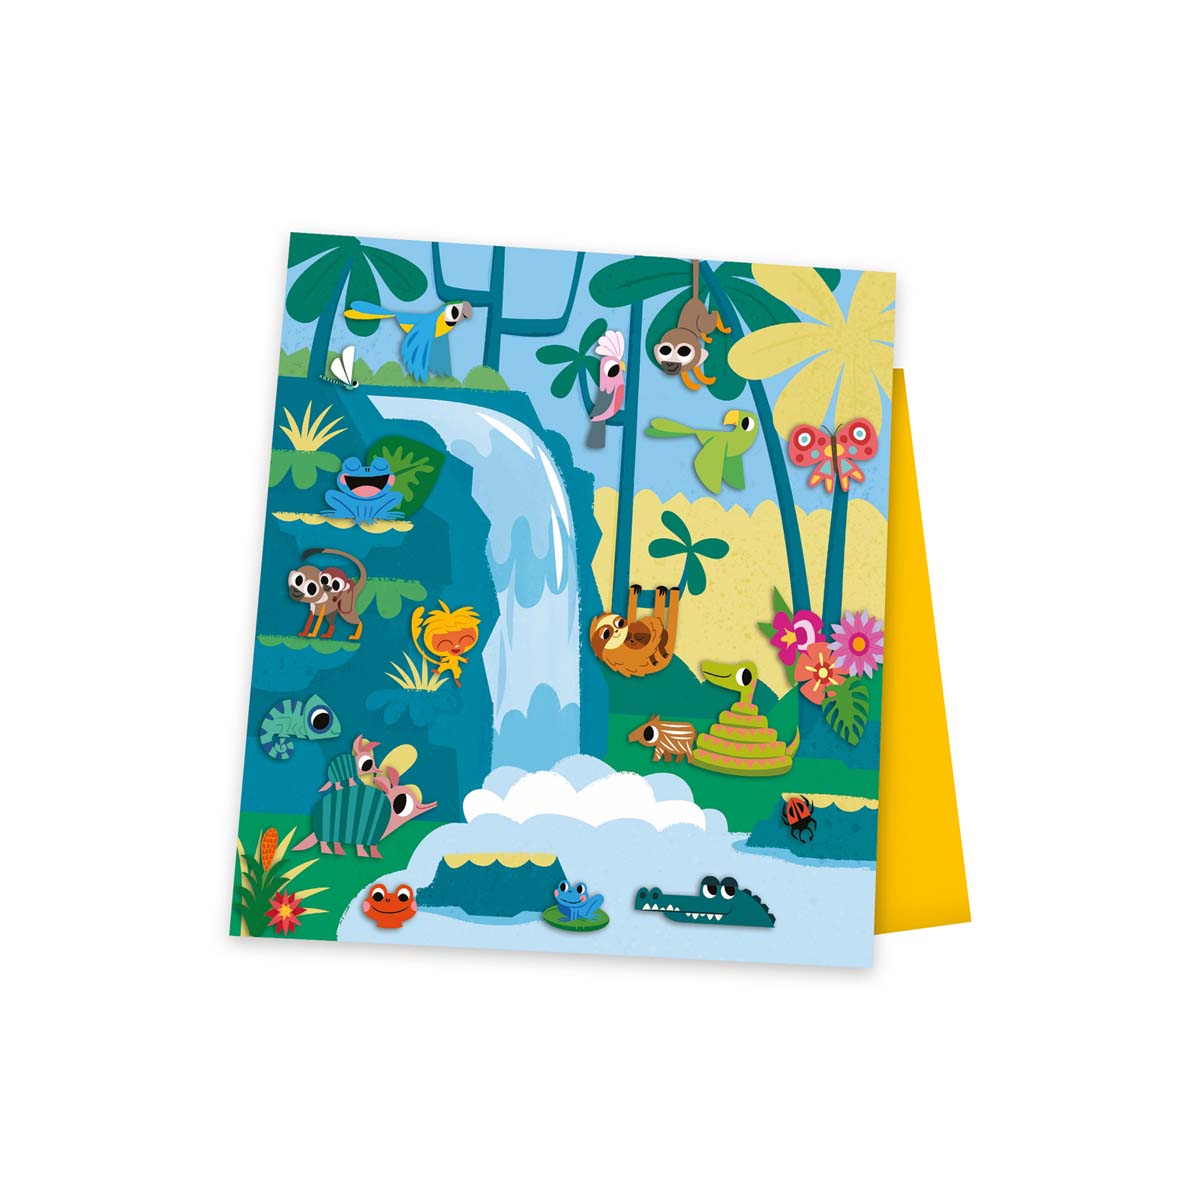 Stickers plakken met Janod’s atelier set! Tover 5 afbeeldingen om door middel van mooie gekleurde stickers in vormen, dingen en dieren. Ideaal voor een knutselmiddag. Geschikt vanaf 5 jaar. VanZus